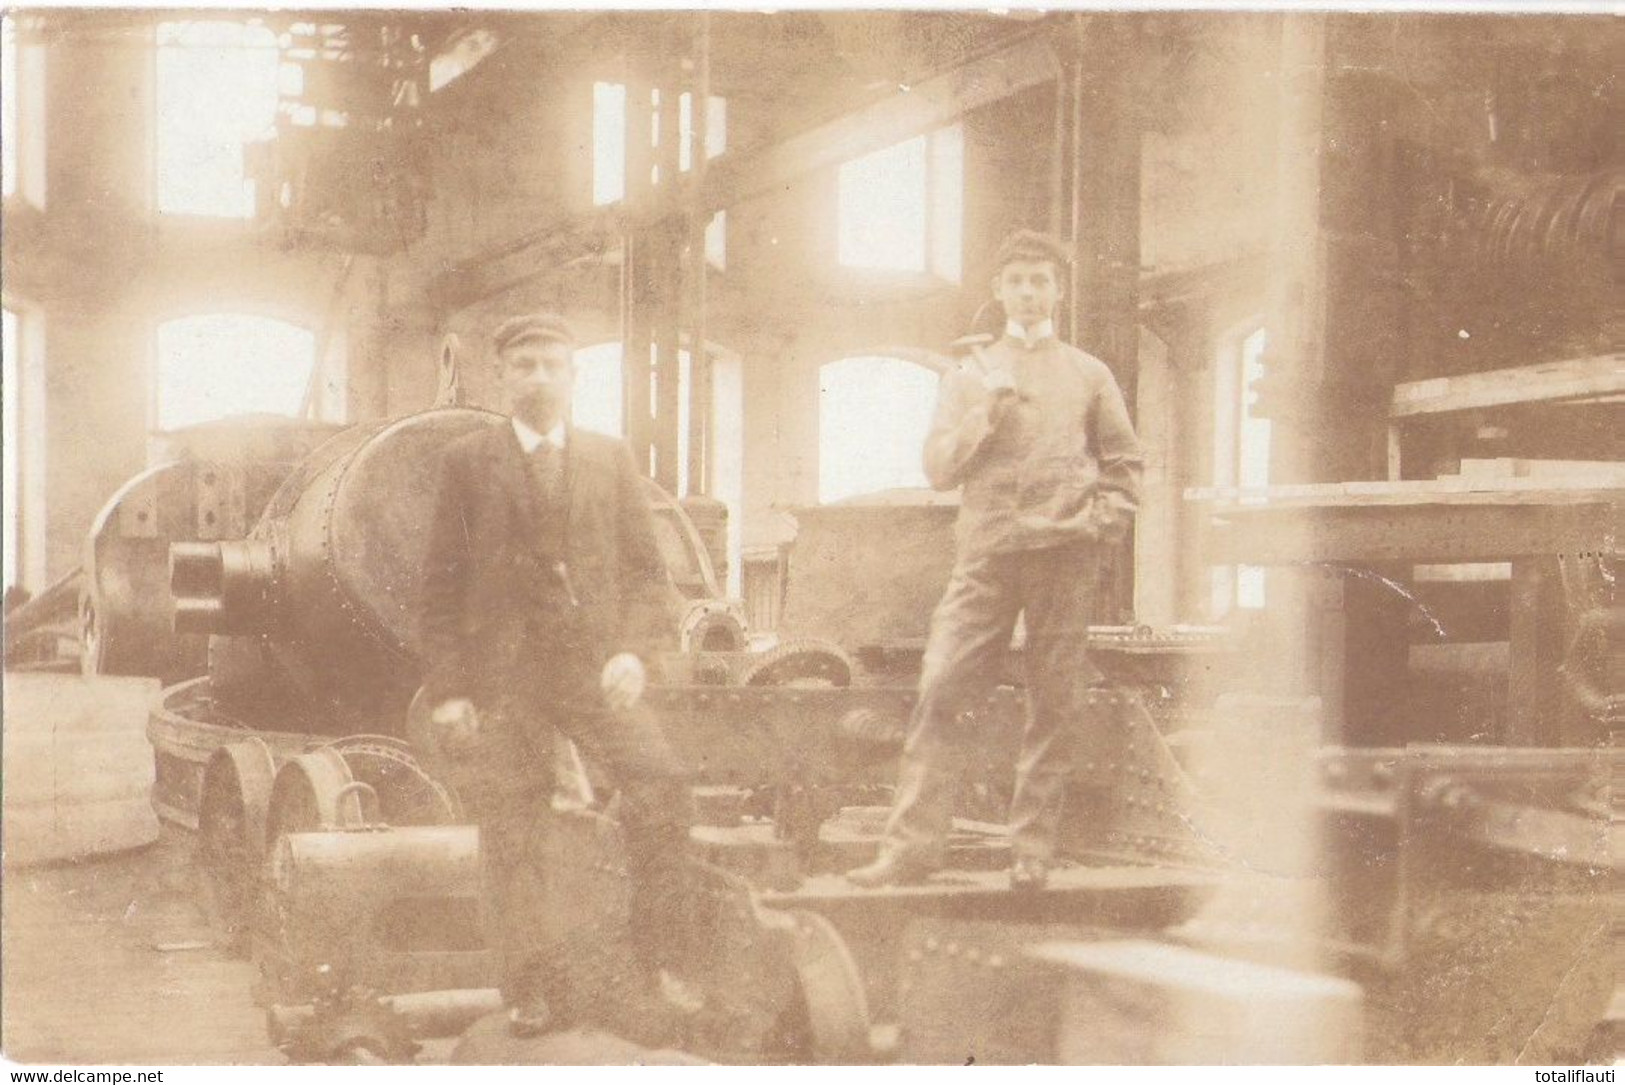 JÜNKERATH Eifel Gemeinde Gerolstein Arbeiter Und Ingenieur Th Zilliken In Werkhalle 1.11.1905 Gelaufen - Gerolstein